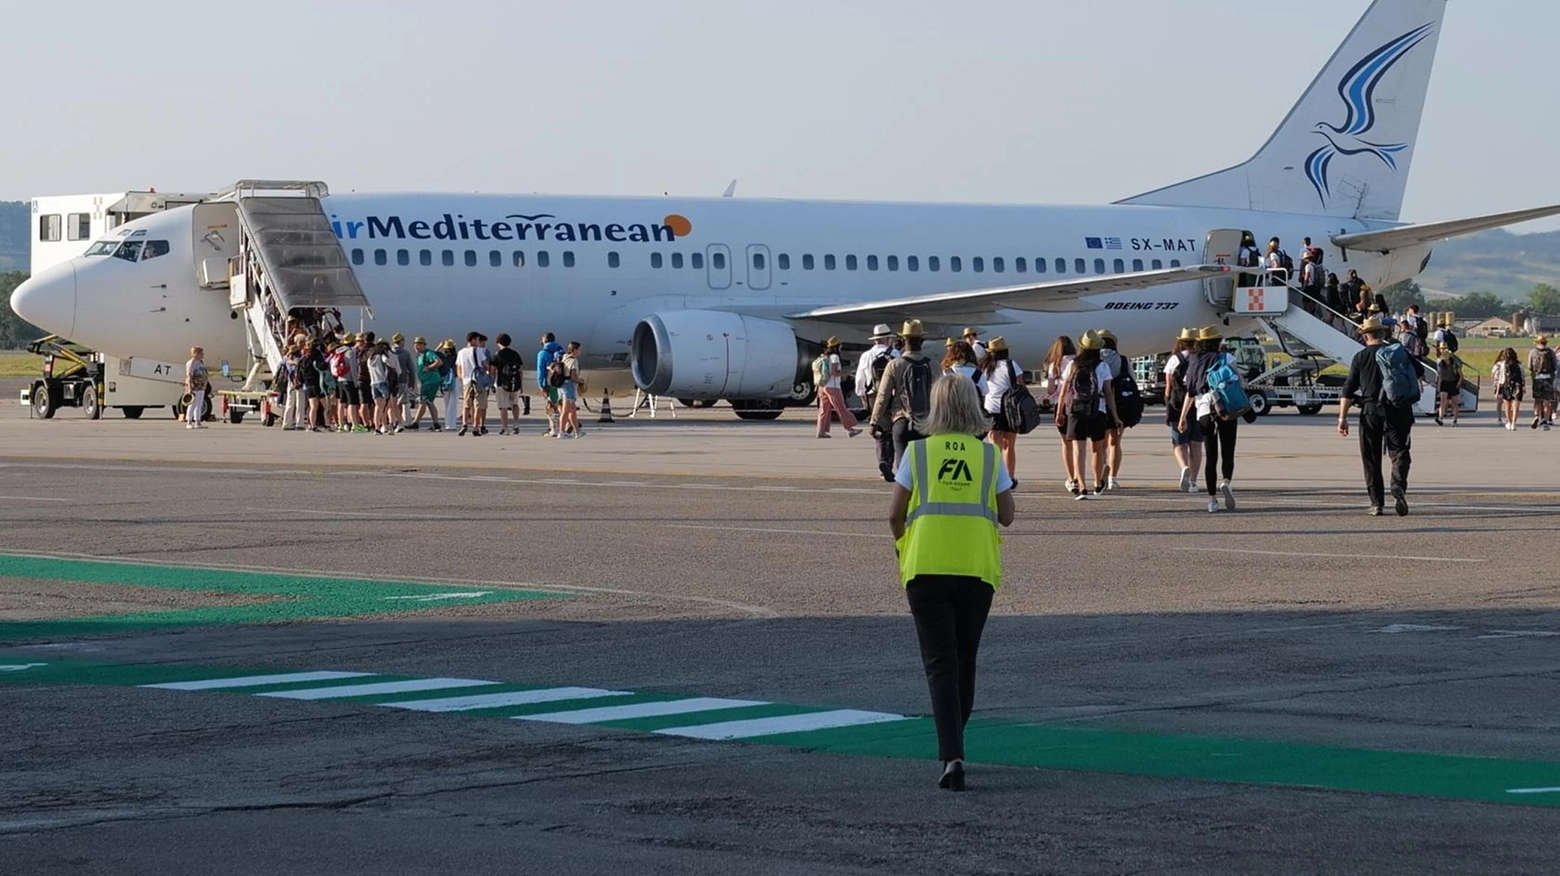 Aeroporto, la precisazione di F.A. dopo nuove proteste di residenti "Nuova rotta per gli atterraggi e decolli verso Cesena, vento permettendo" .